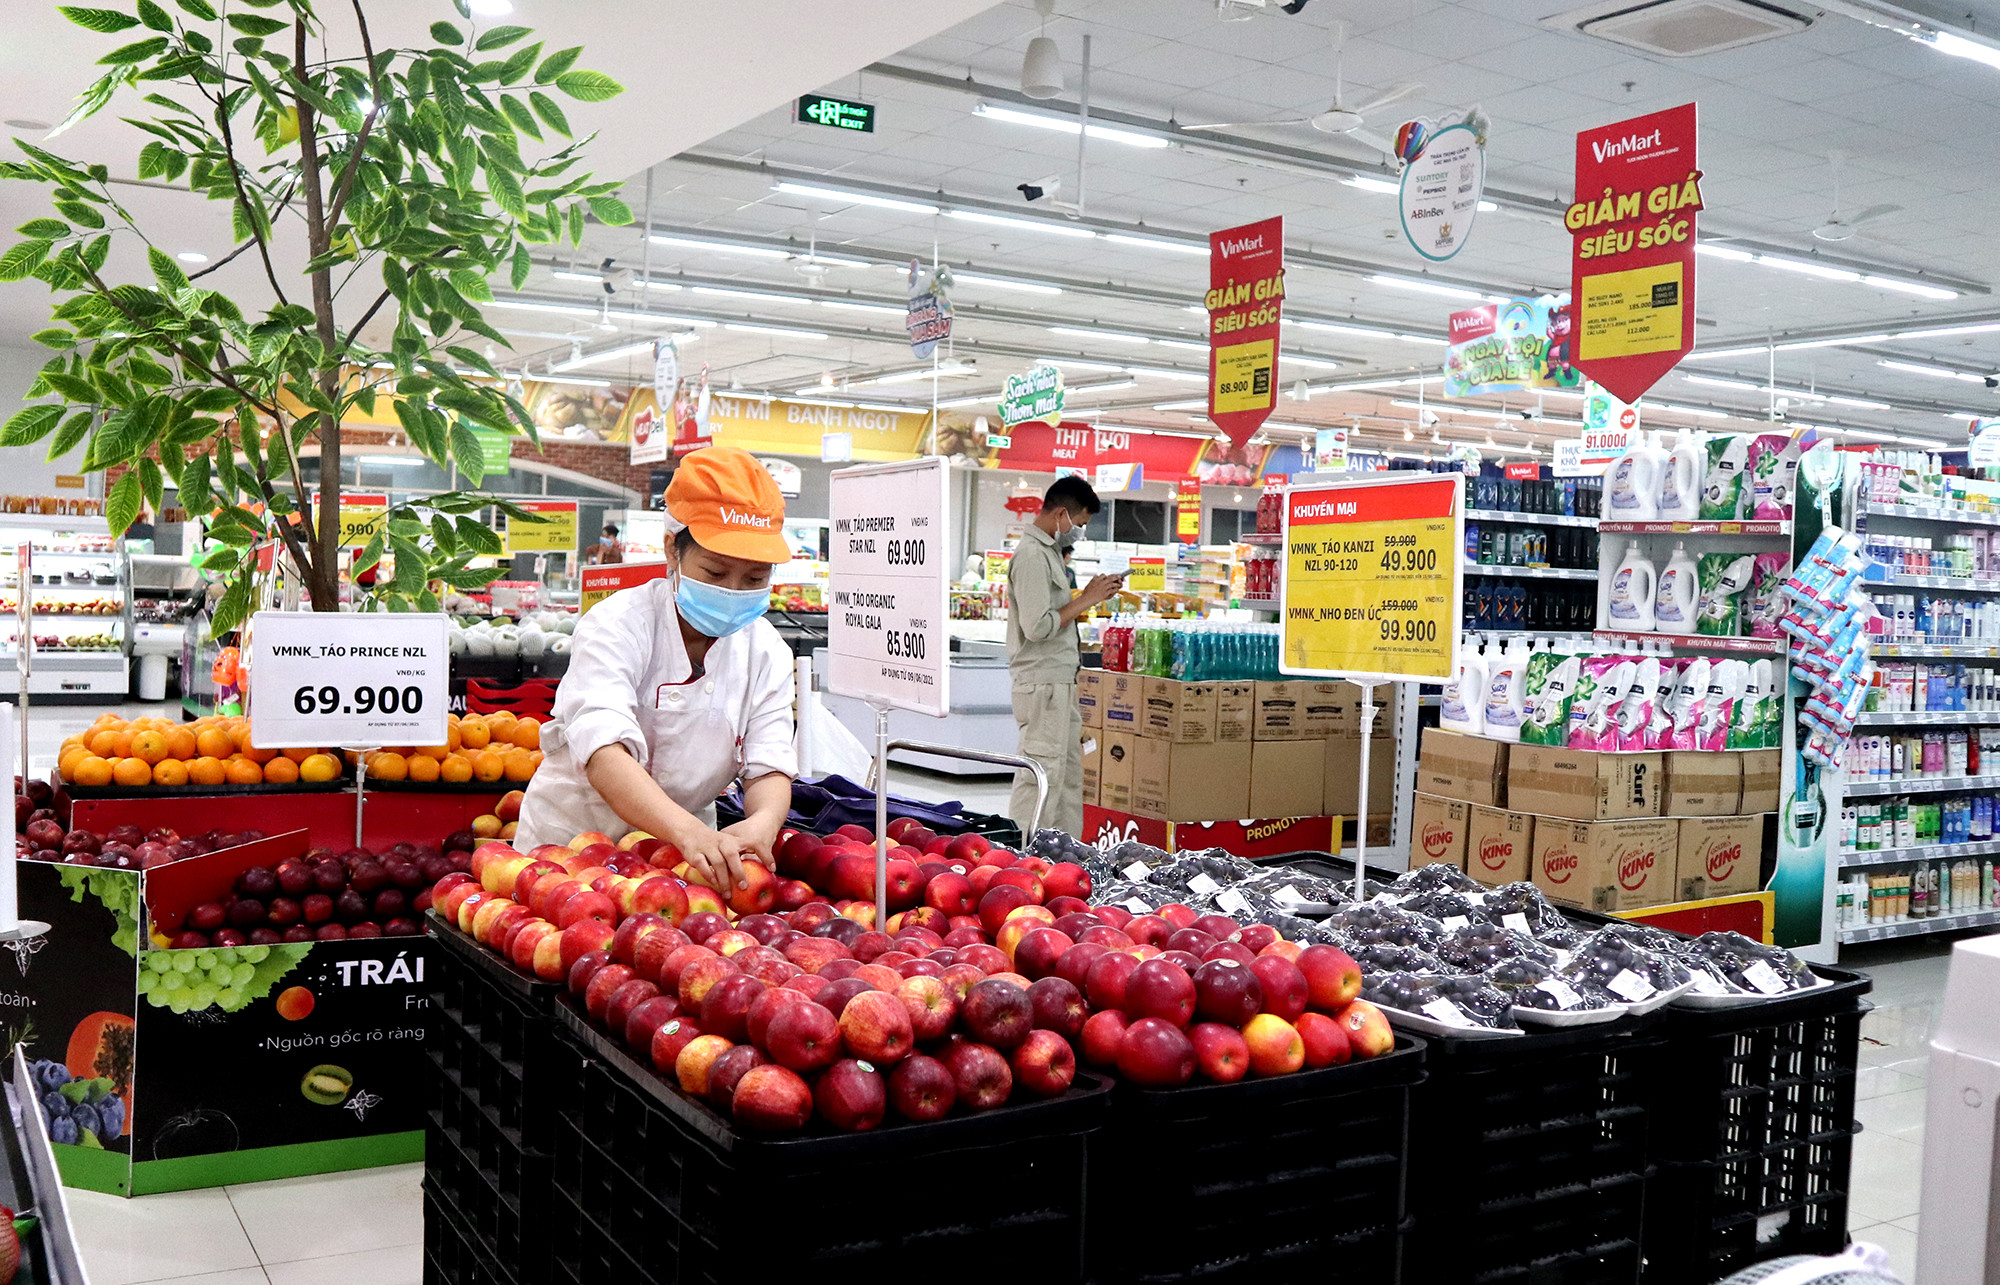 Thời điểm này, nhóm hàng tiêu thụ mạnh nhất tại các siêu thị là hoa quả nội địa, tăng 50-70% so với trước đó. Ảnh: Thanh Phúc